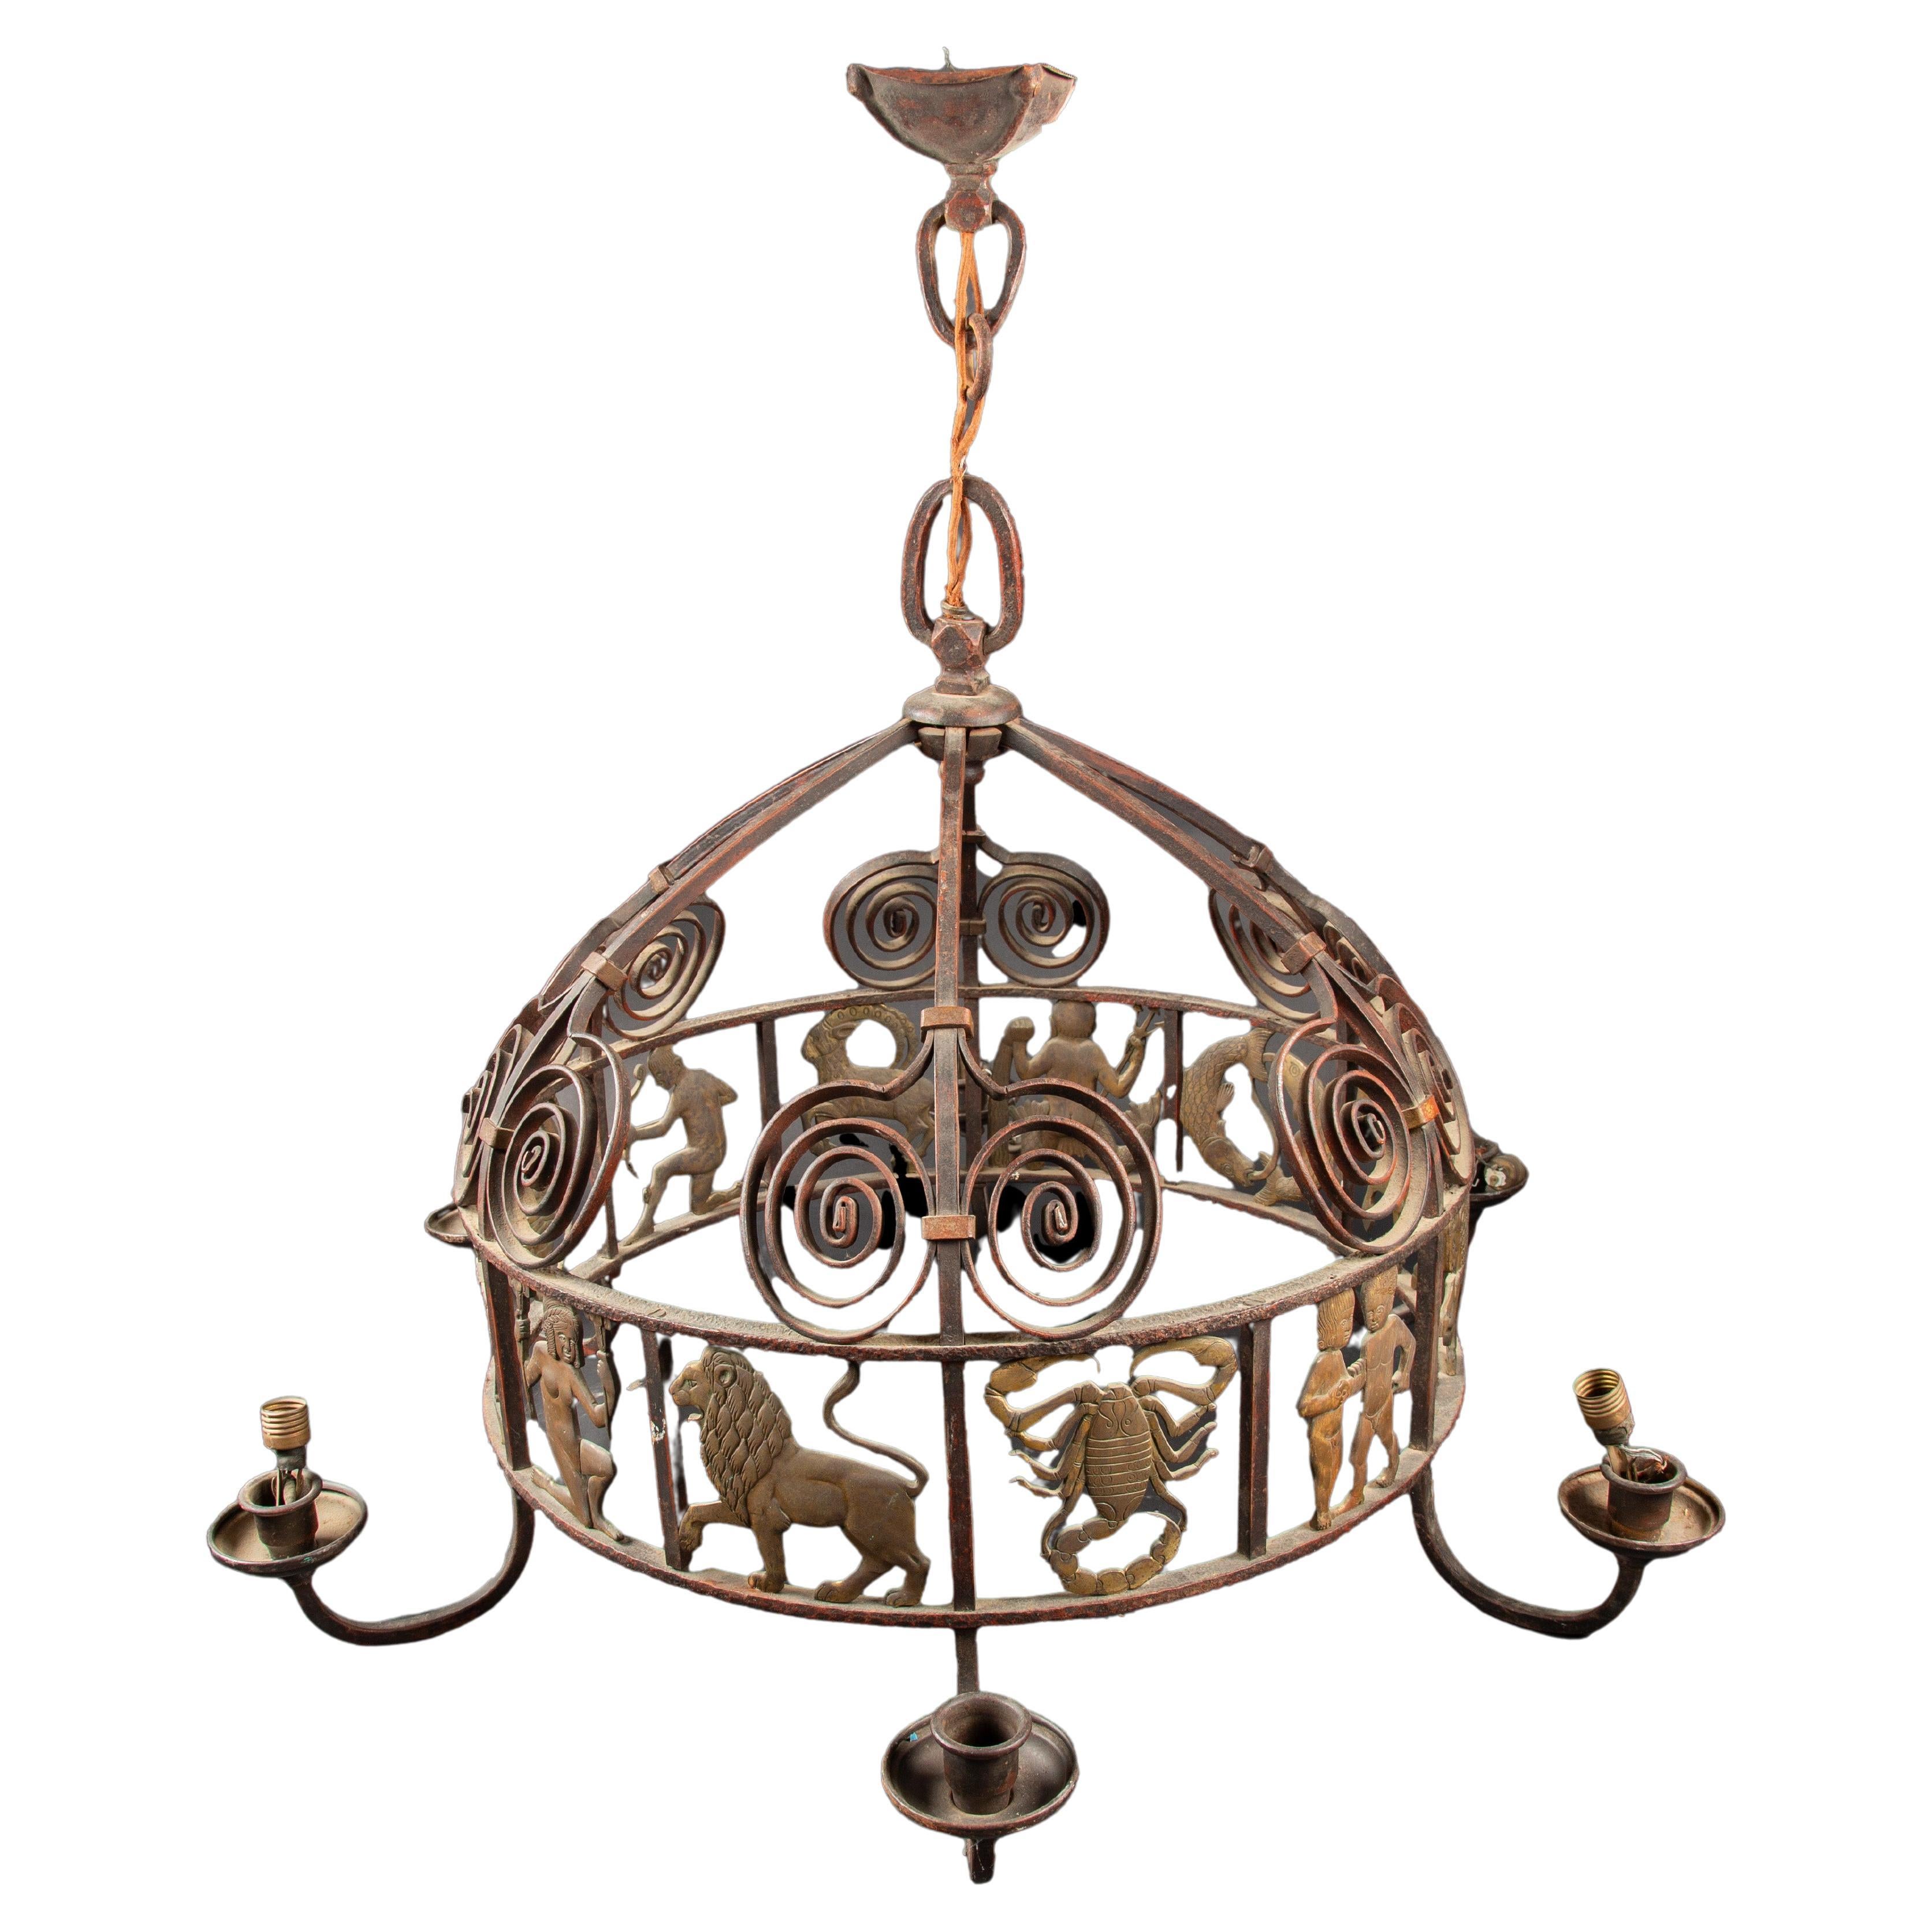 Celestial Splendor: Französischer Art-Déco-Kronleuchter aus Eisen und Bronze aus den 1920er Jahren mit Zodiacs